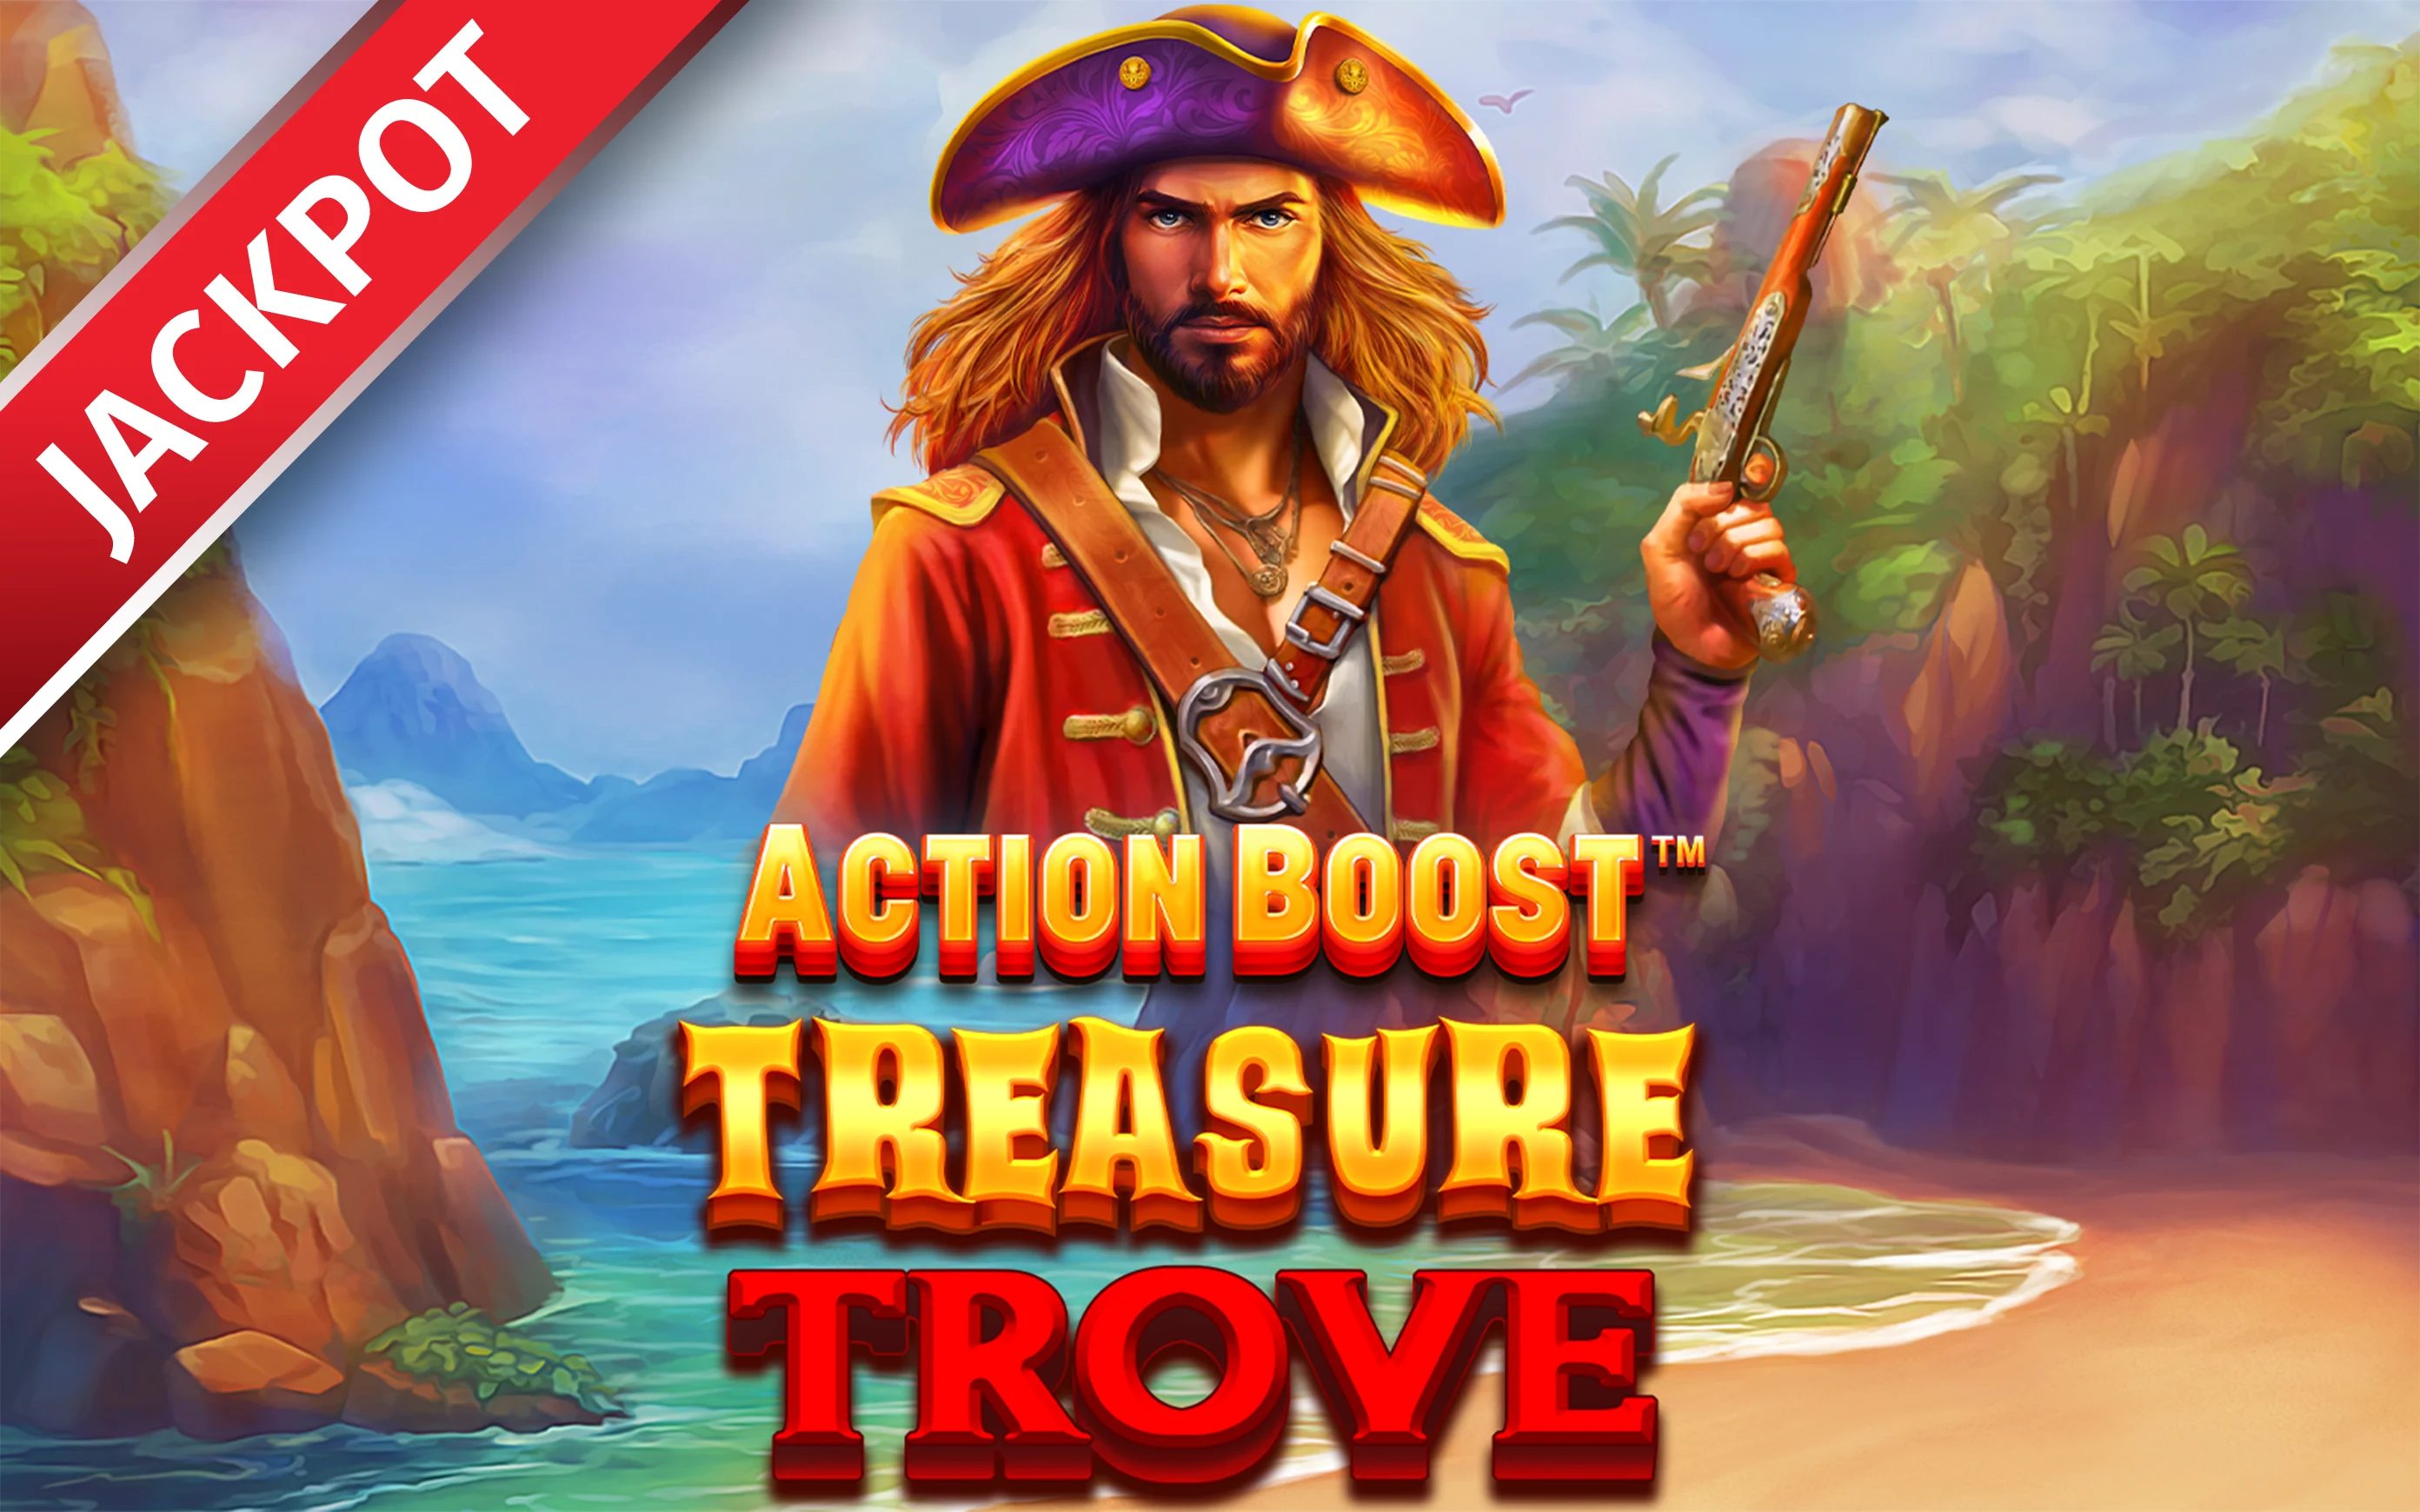 Jouer à Action Boost™ Treasure Trove™ sur le casino en ligne Starcasino.be